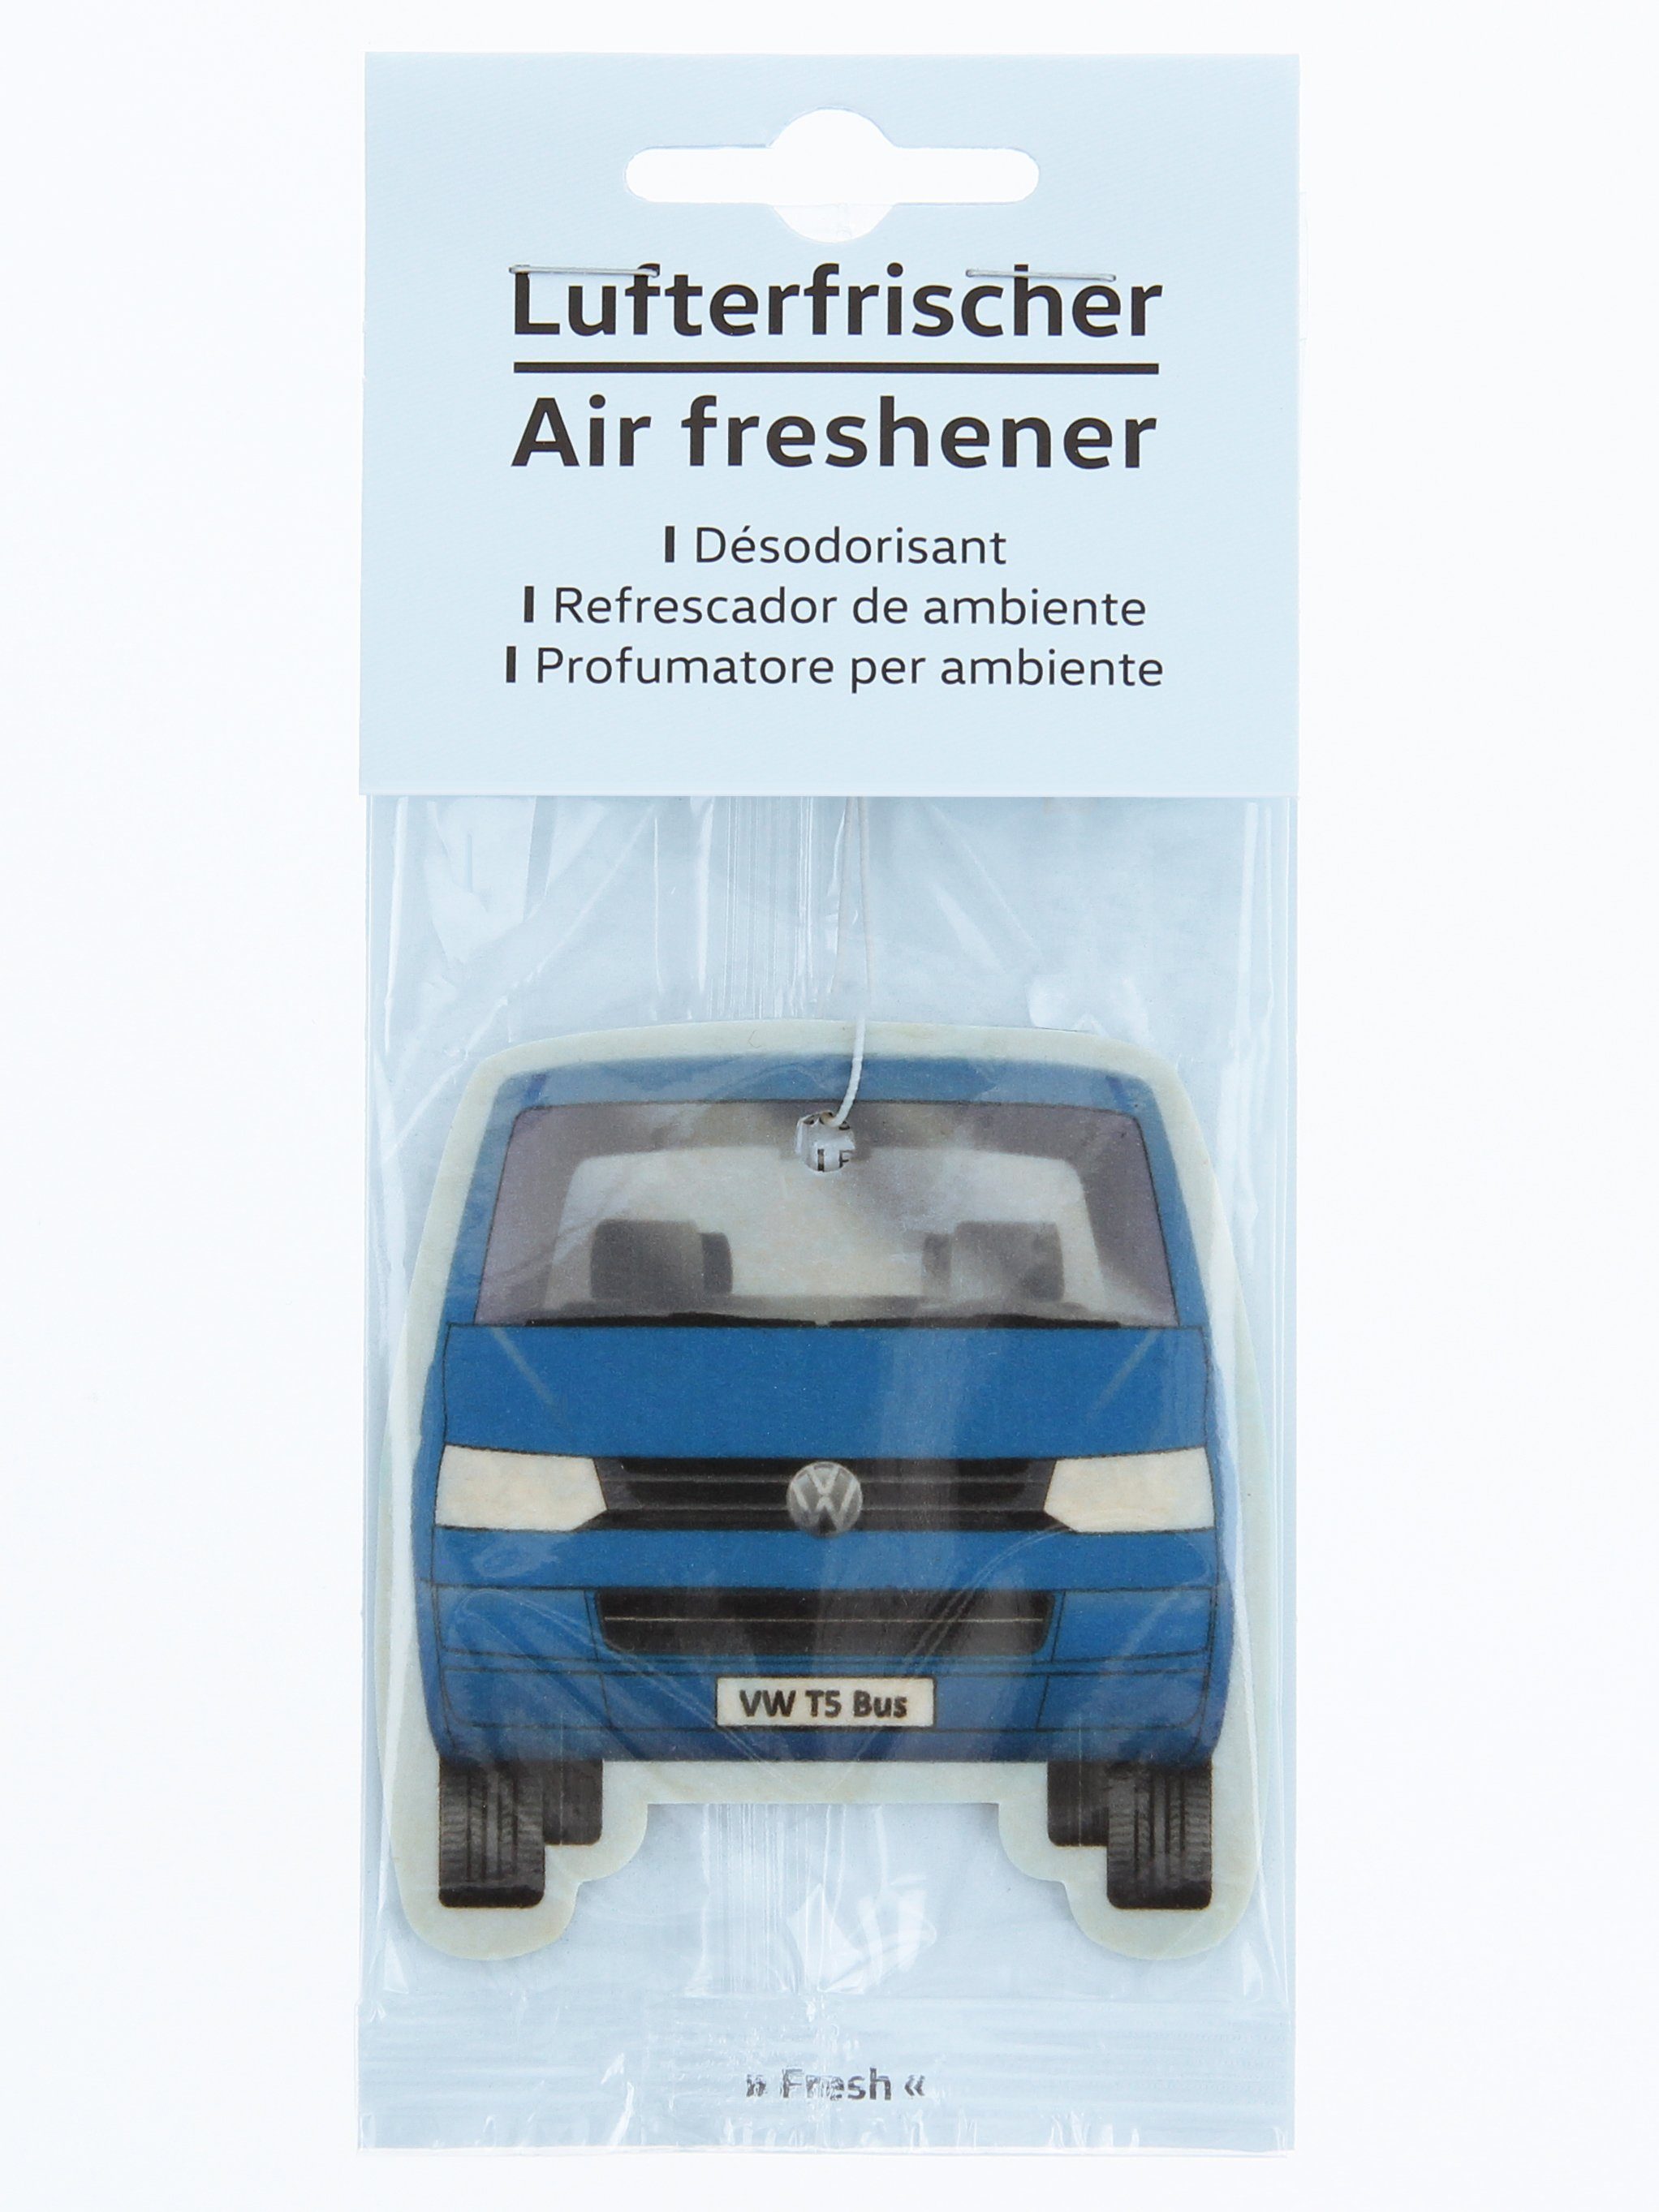 VW Collection by BRISA Raumduft Duftbaum Geruch fürs (1-St), T5 Frischer Lufterfrischer Fresh/Blau Auto im Volkswagen blauen Design, Bus